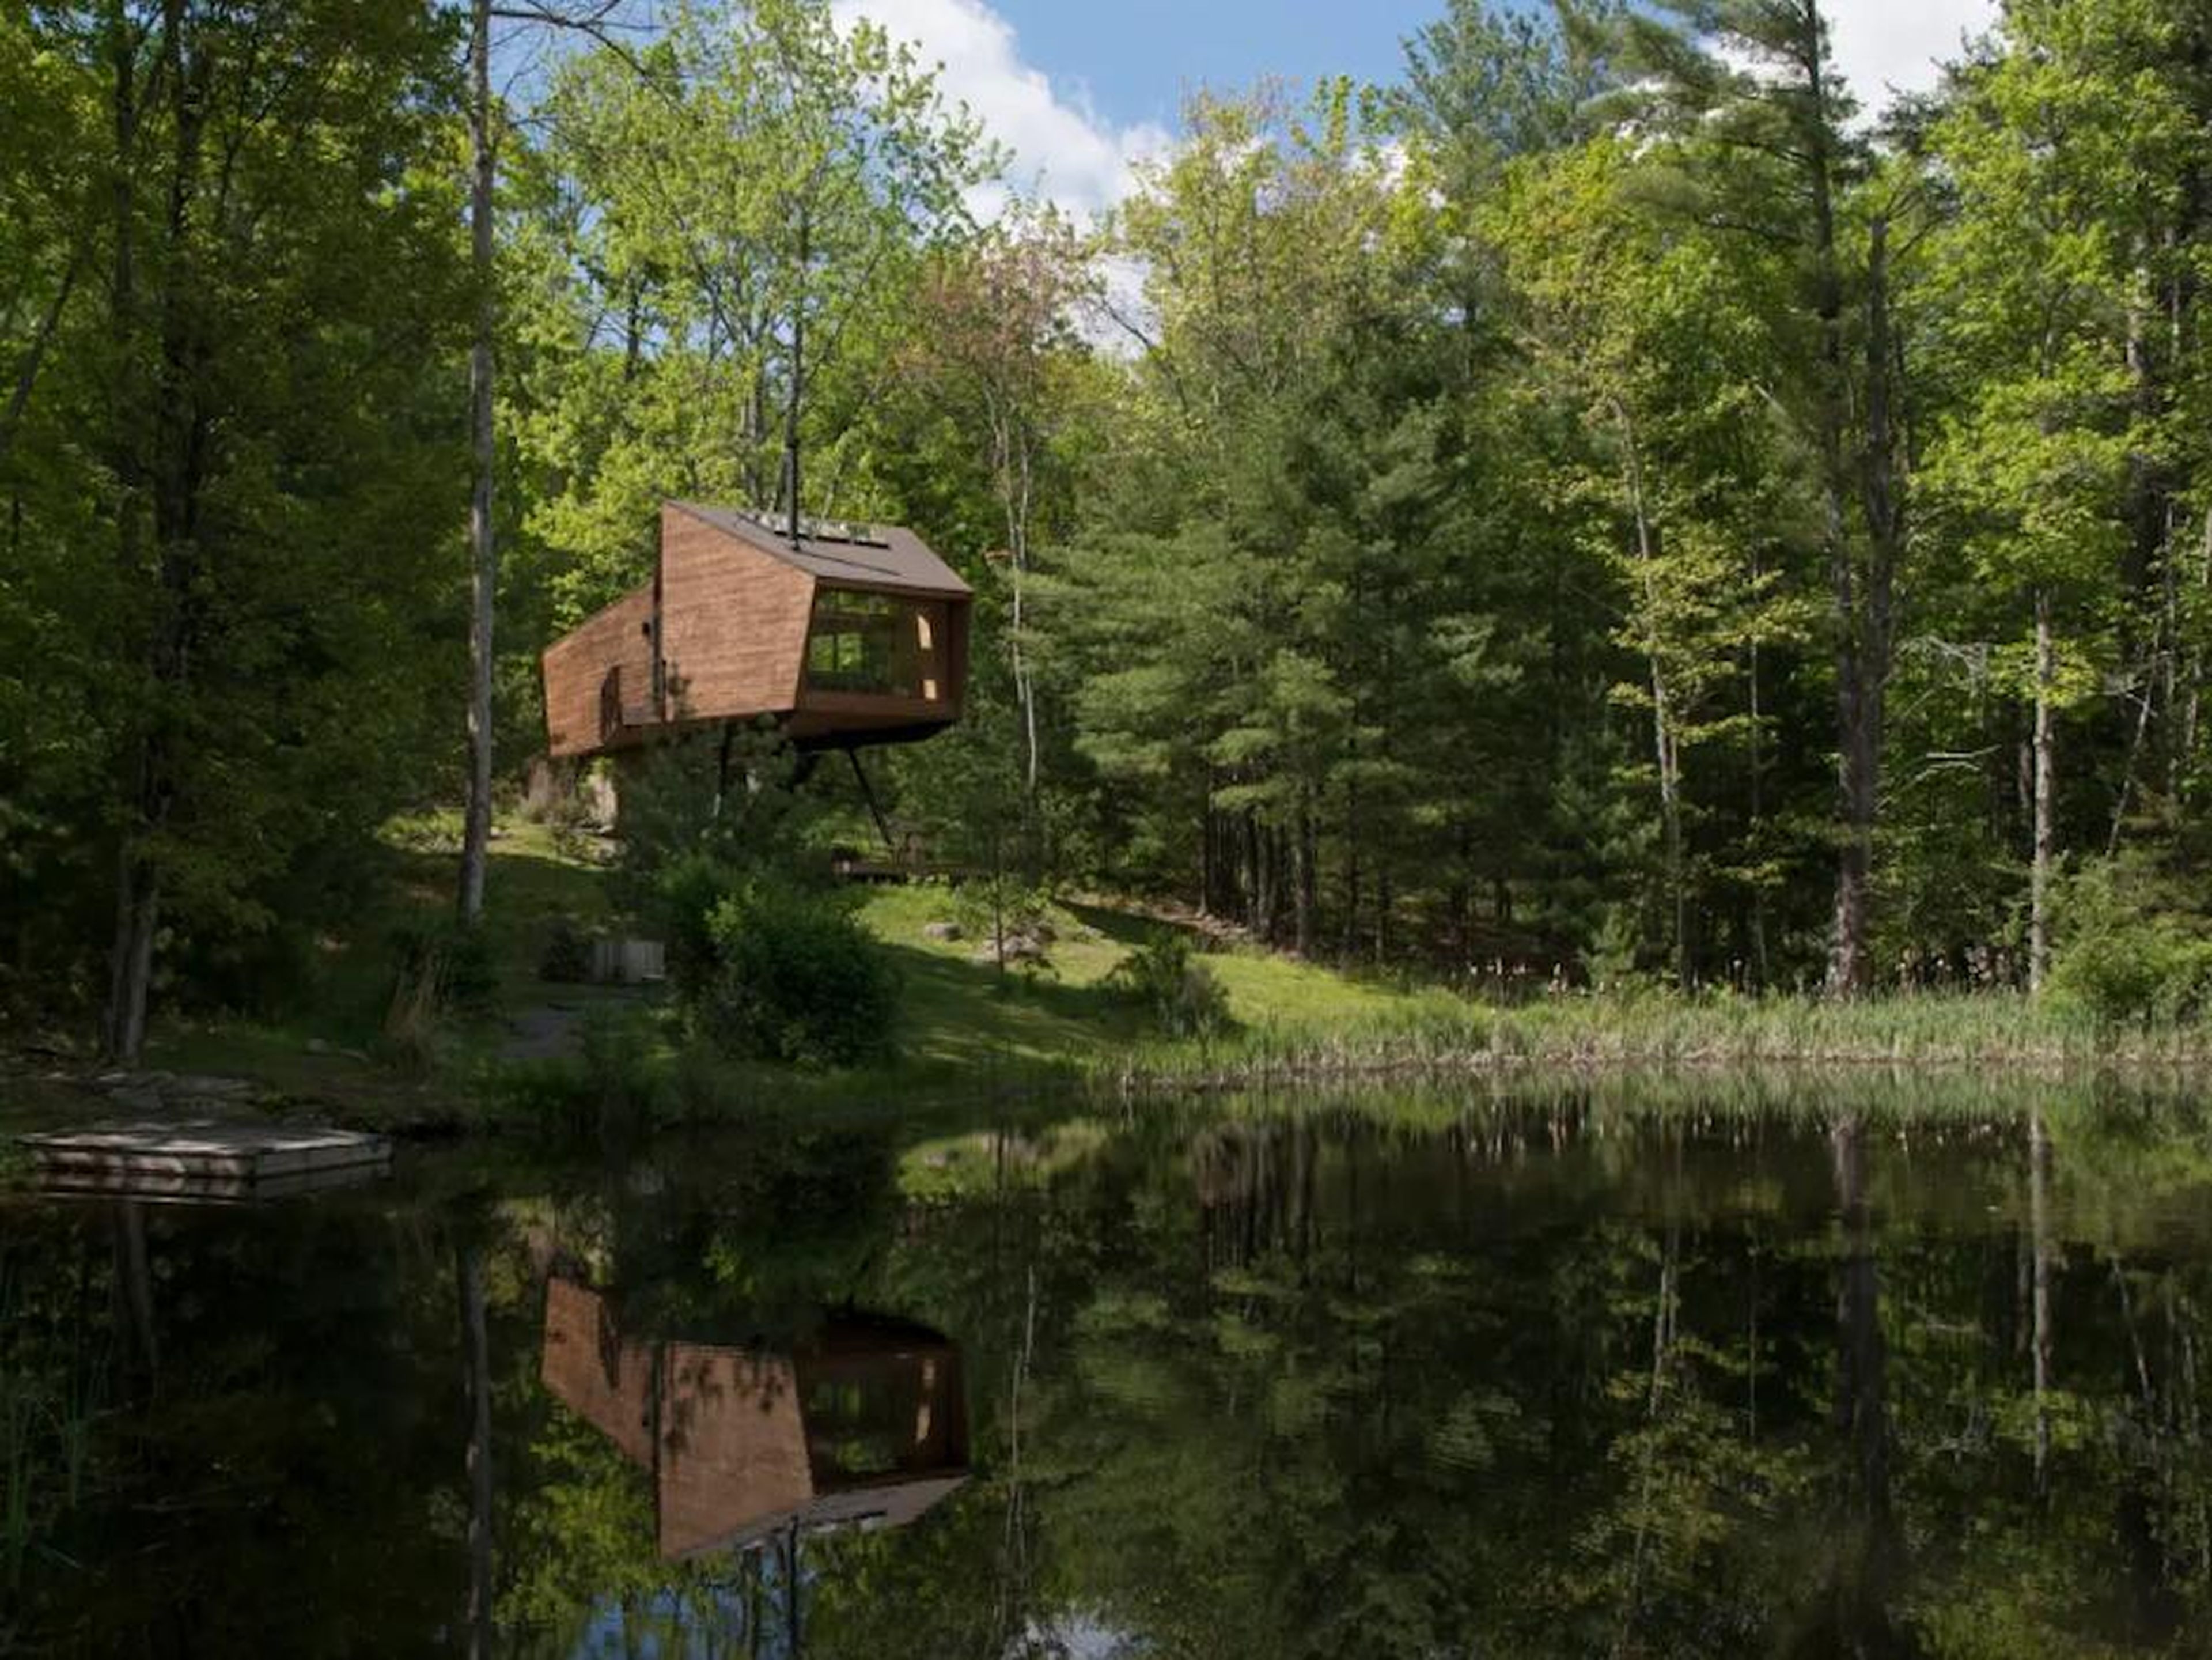 [RE] 3. A los seguidores de Instagram de Airbnb también les encantó la "Willow Treehouse" en Willow, Nueva York.